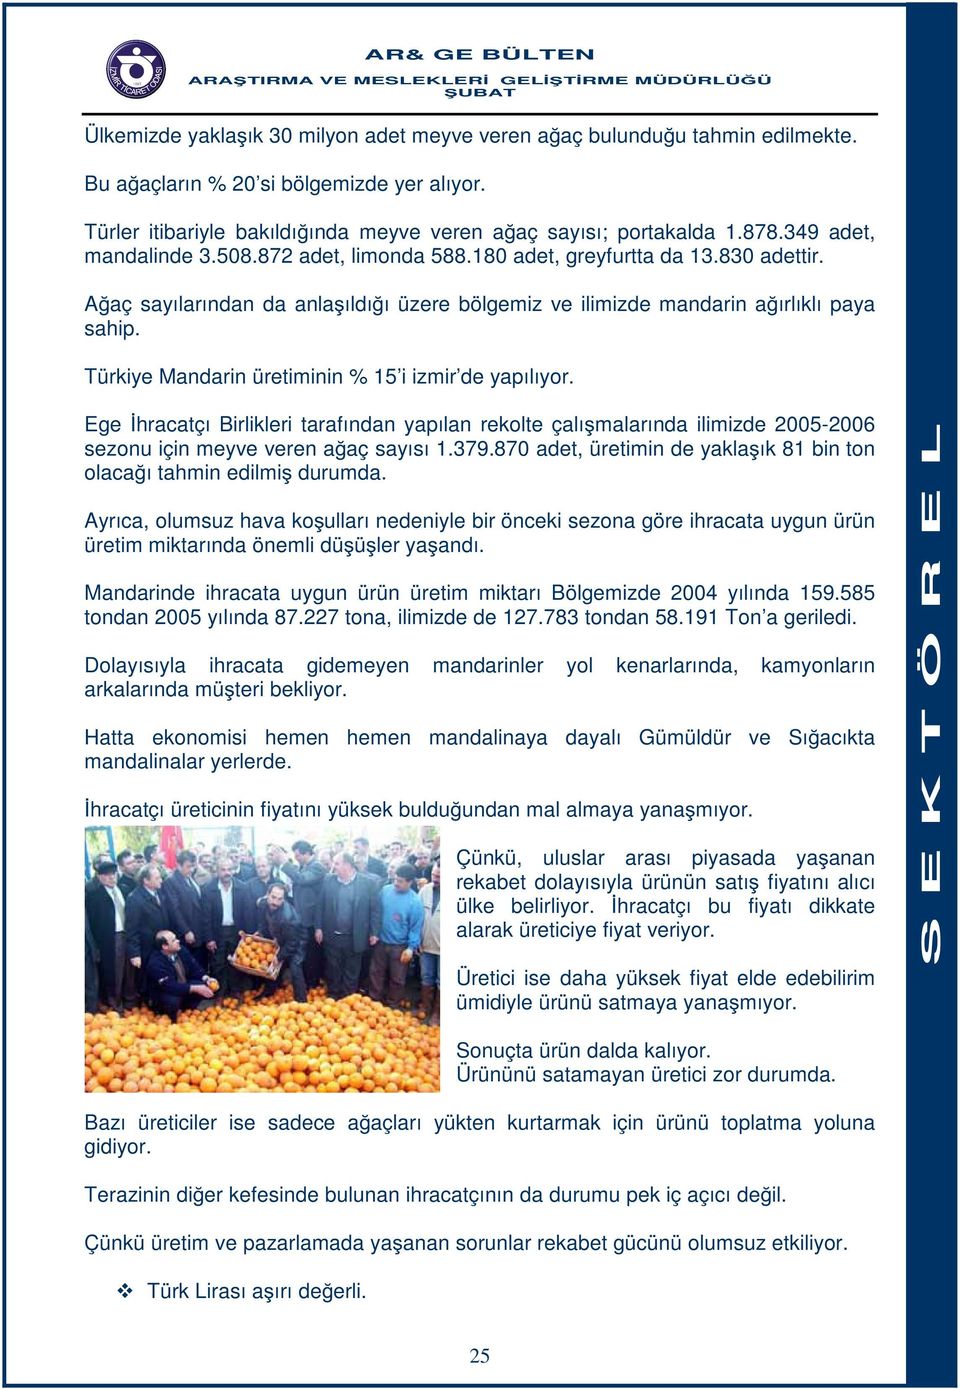 Türkiye Mandarin üretiminin % 15 i izmir de yapılıyor. Ege İhracatçı Birlikleri tarafından yapılan rekolte çalışmalarında ilimizde 2005-2006 sezonu için meyve veren ağaç sayısı 1.379.